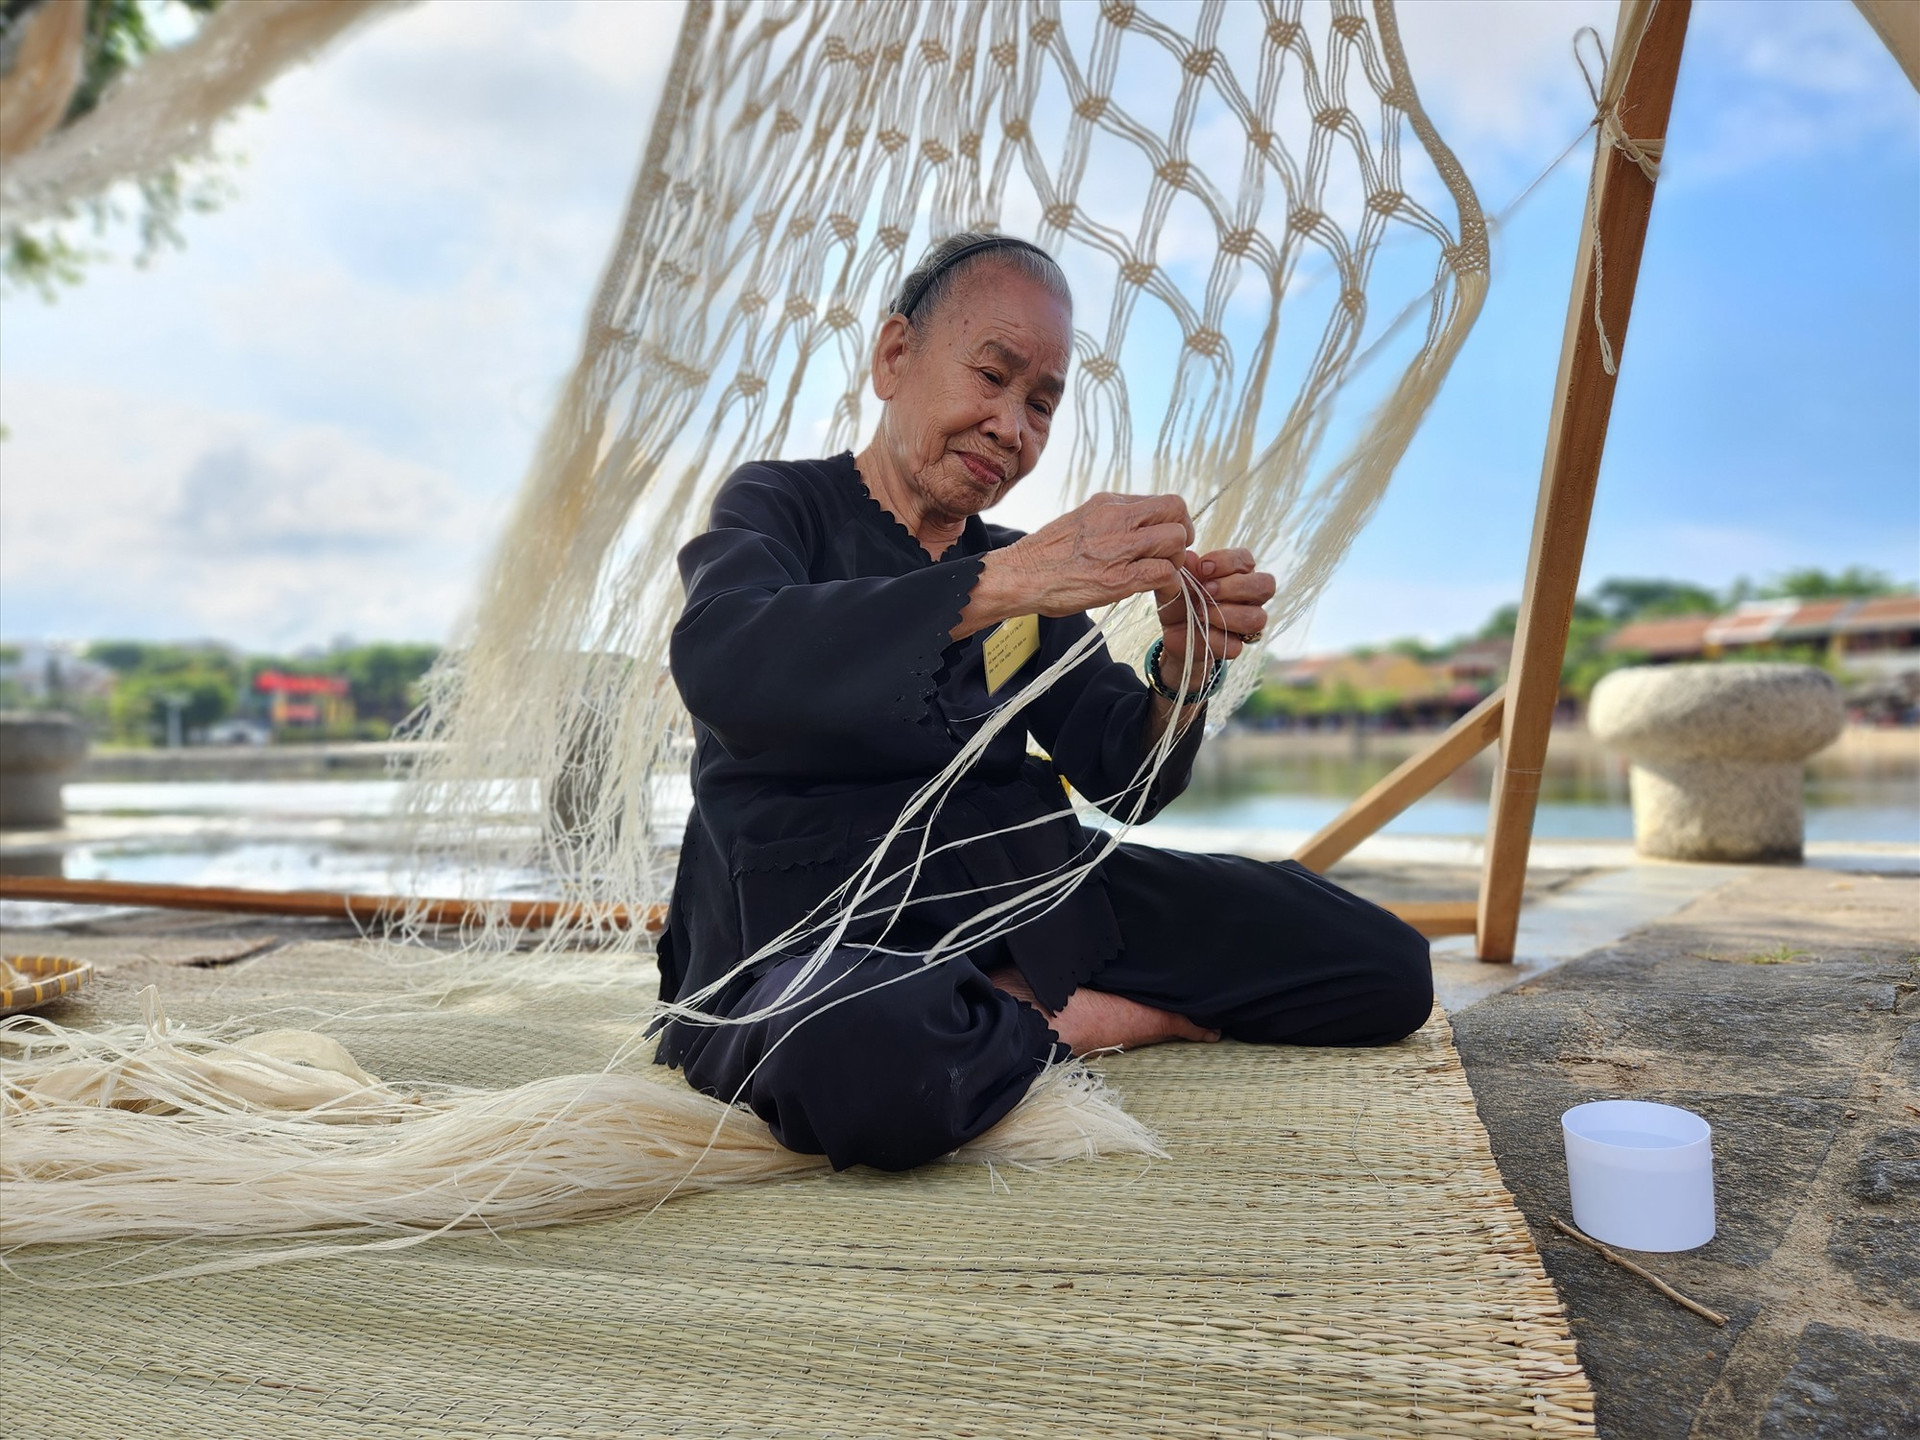 Nghề đan võng ngô đồng là một nét văn hóa đặc sắc của người dân Cù Lao Chàm đang dần được gắn với hoạt động trải nghiệm du lịch. Ảnh: Q.T